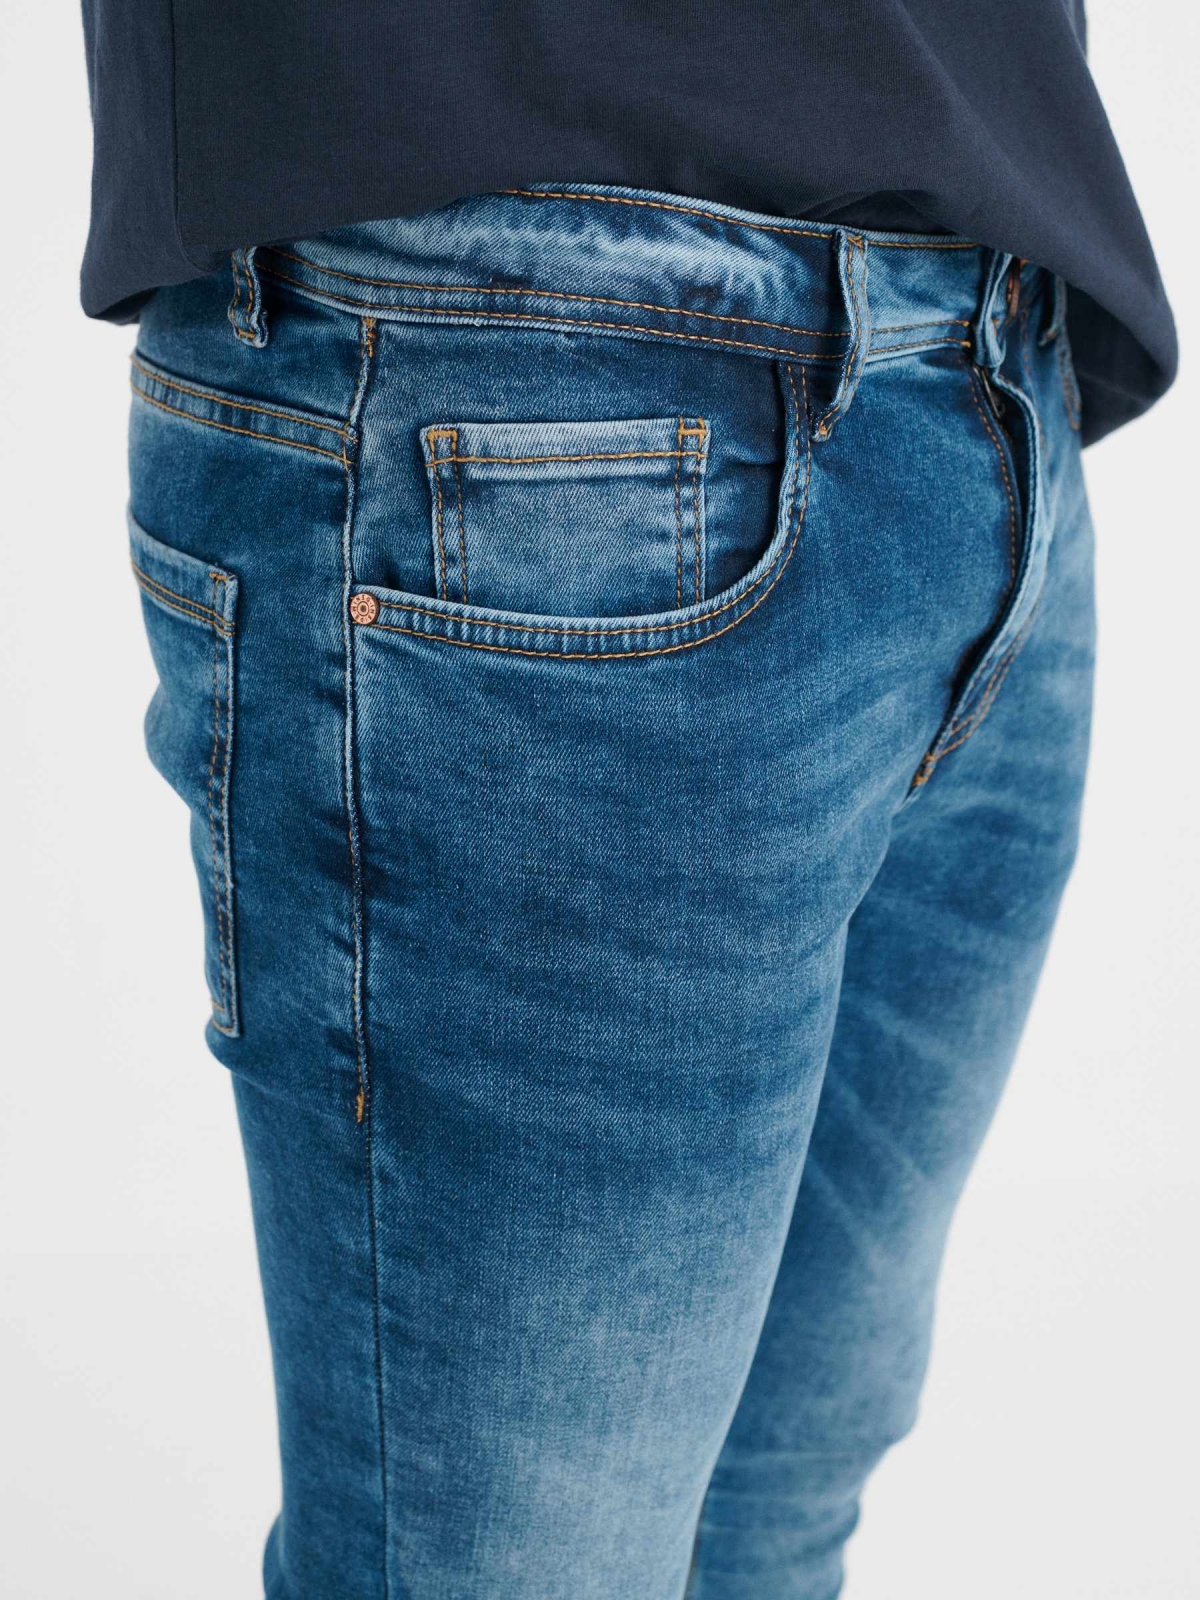 Jeans super slim azul lavado azul vista detalhe